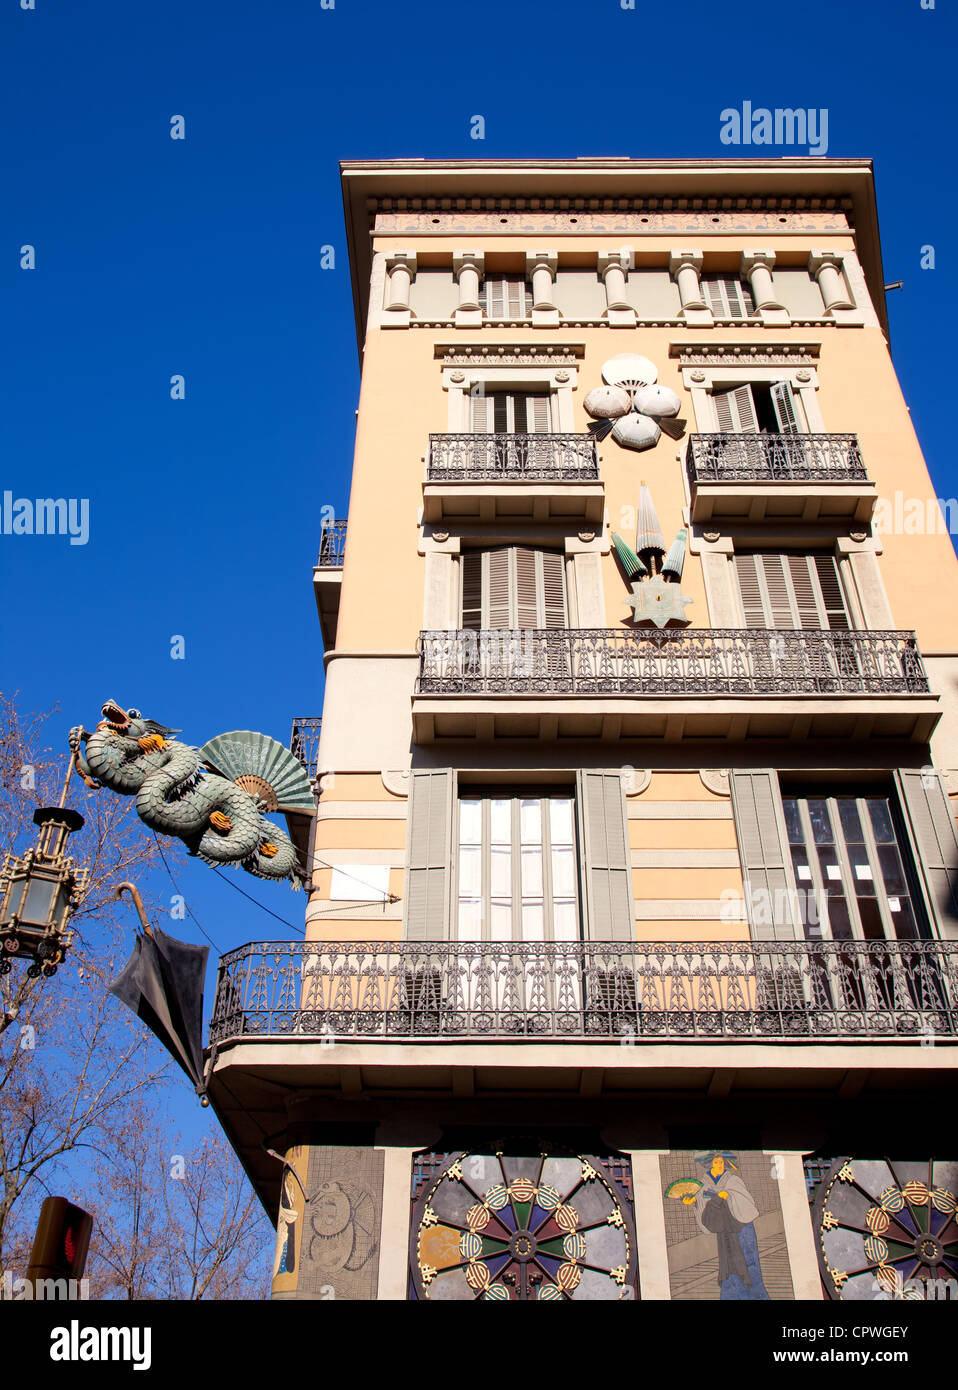 Barcelona Ramblas street dragon in Plaza de la Boqueria by Josep Vilaseca architect Stock Photo